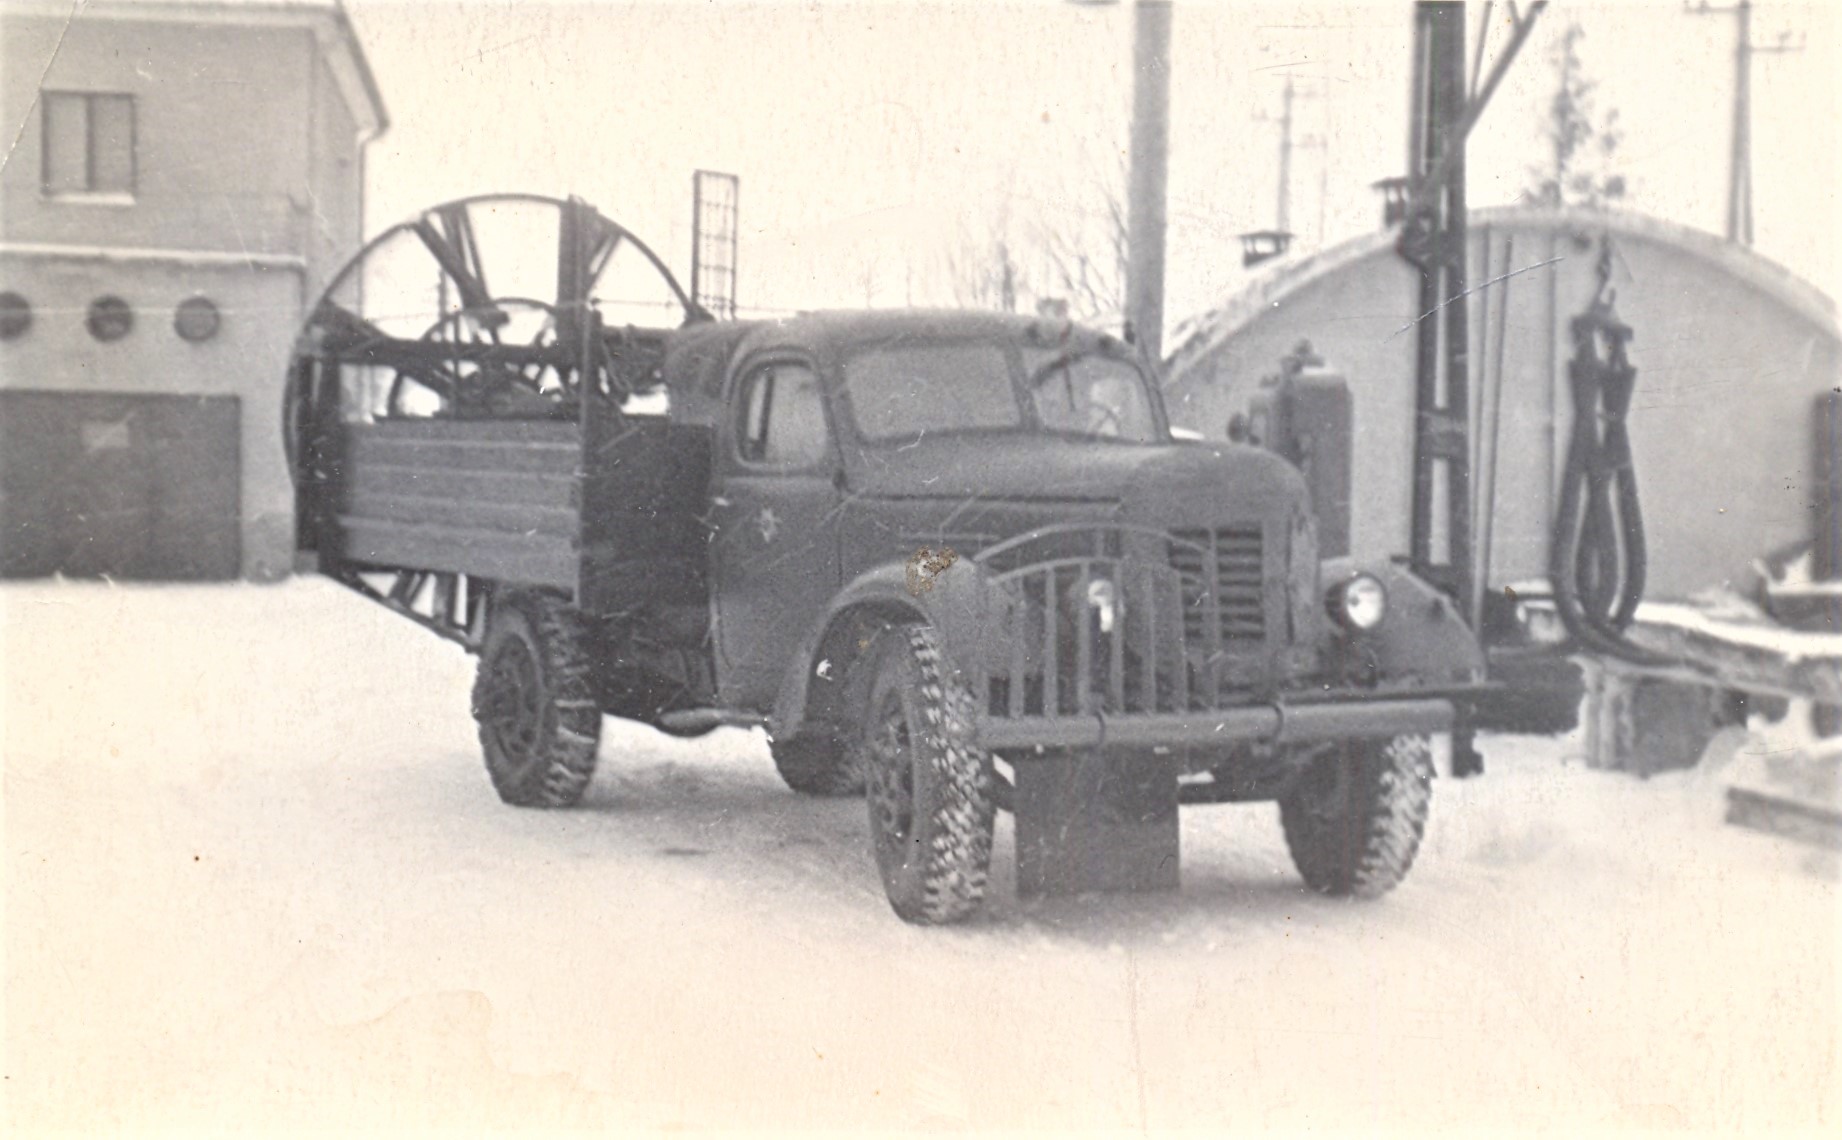 Sahkamisel tee äärde kuhjuvad lumevallid tuli eemaldada traktorsahaga või siis käsitsi. Insener Volberg püüdis seda tööd mehhaniseerida, konstrueerides 1958. aastal spetsiaalse rootor-lumevalli eemaldaja veoautole ZIS-150. (Foto: Eesti Maanteemuuseum)